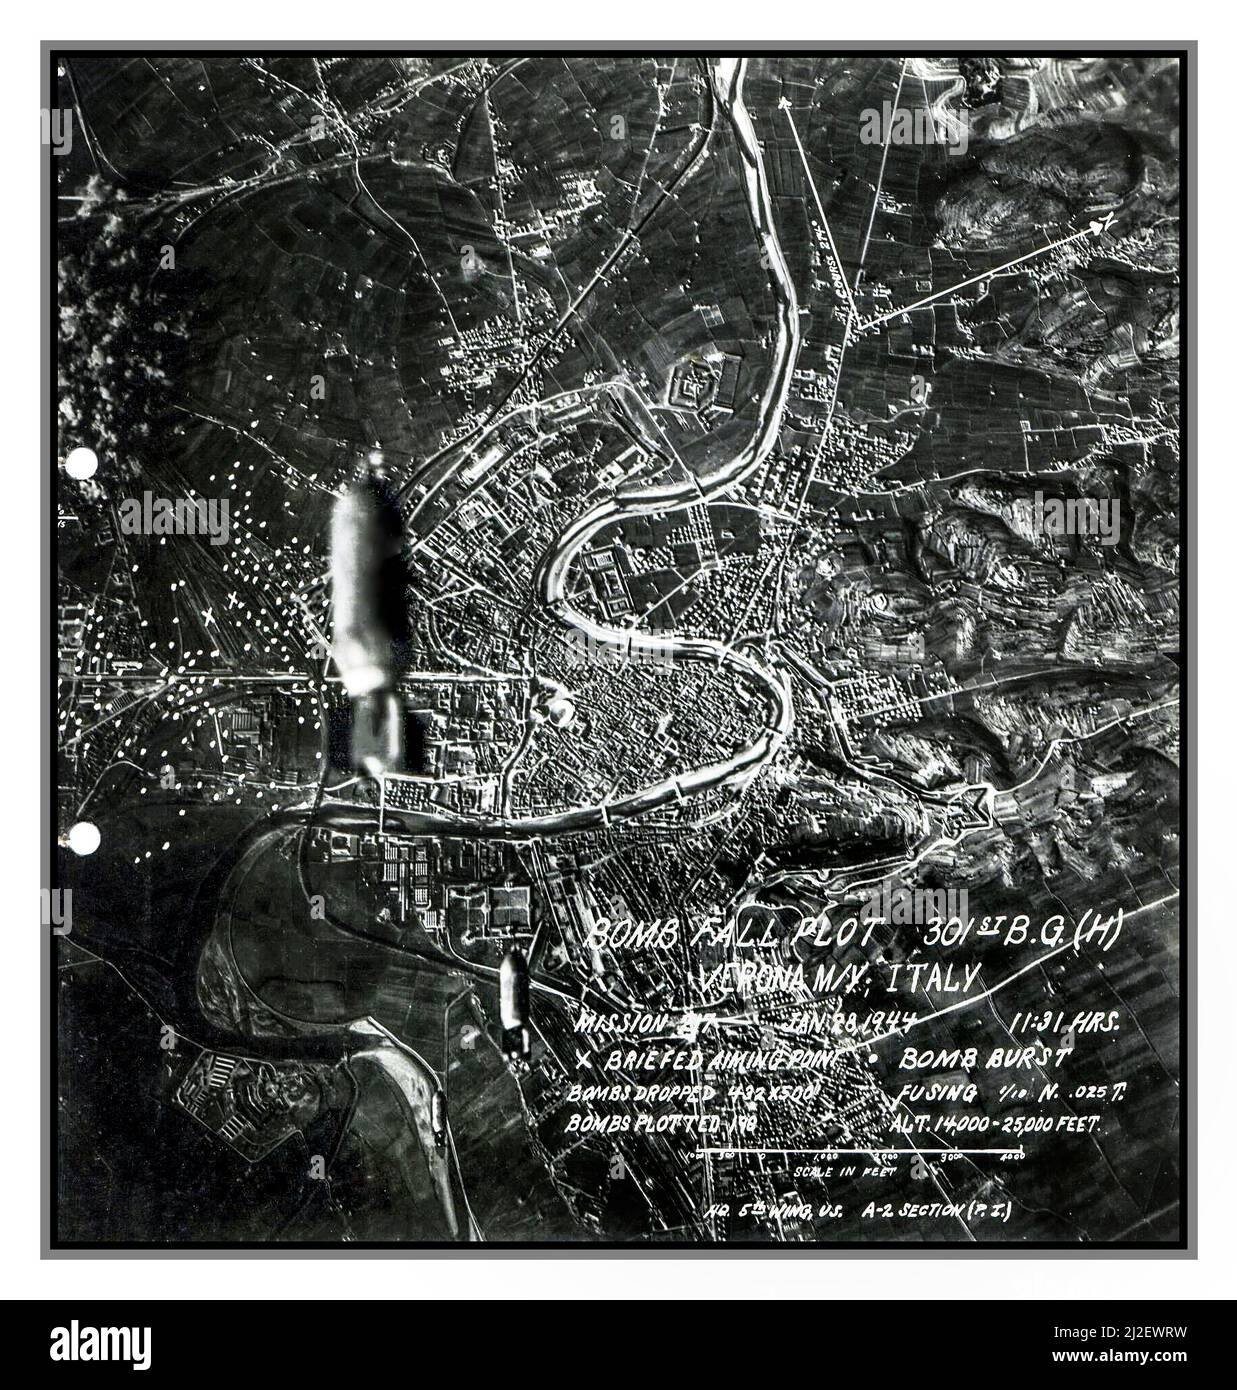 WW2 Italien bombardiert 301. BOMBENGRUPPE USAF 1944 Bombenplotbild des Bombenanschlags auf Verona am 28/01/1944 die Bombenziele sind mit Kreuzen gekennzeichnet, die Kreise markieren die Punkte, an denen die Bomben gefallen sind. Datum 28. Januar 1944 Zweiten Weltkrieg Stockfoto